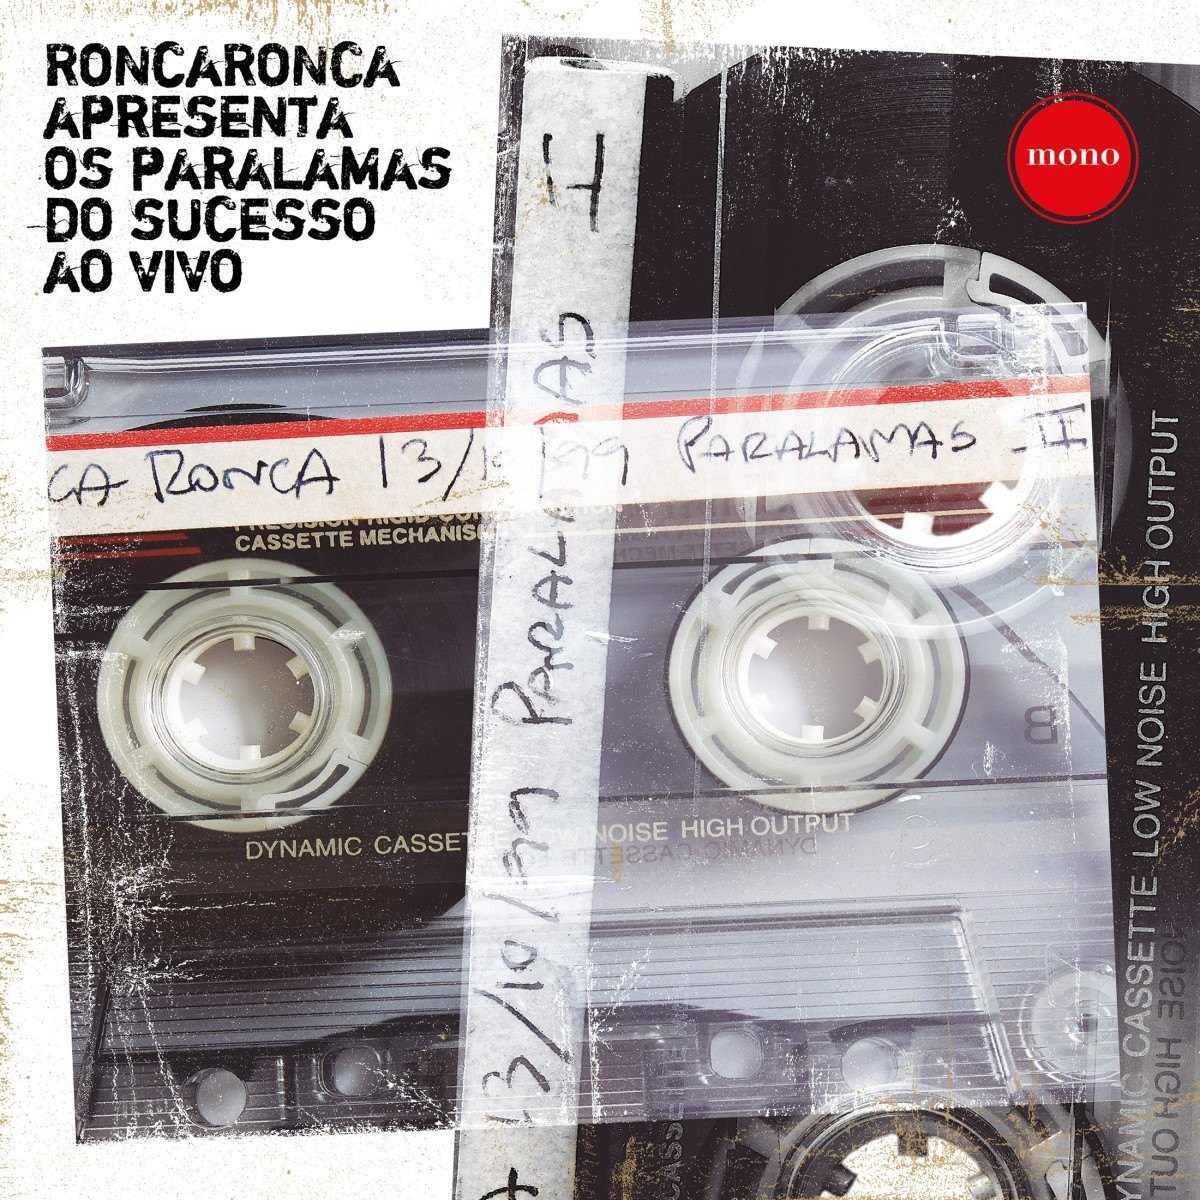 Paralamas do sucesso lança vinil em comemoração ao programa Ronca Ronca